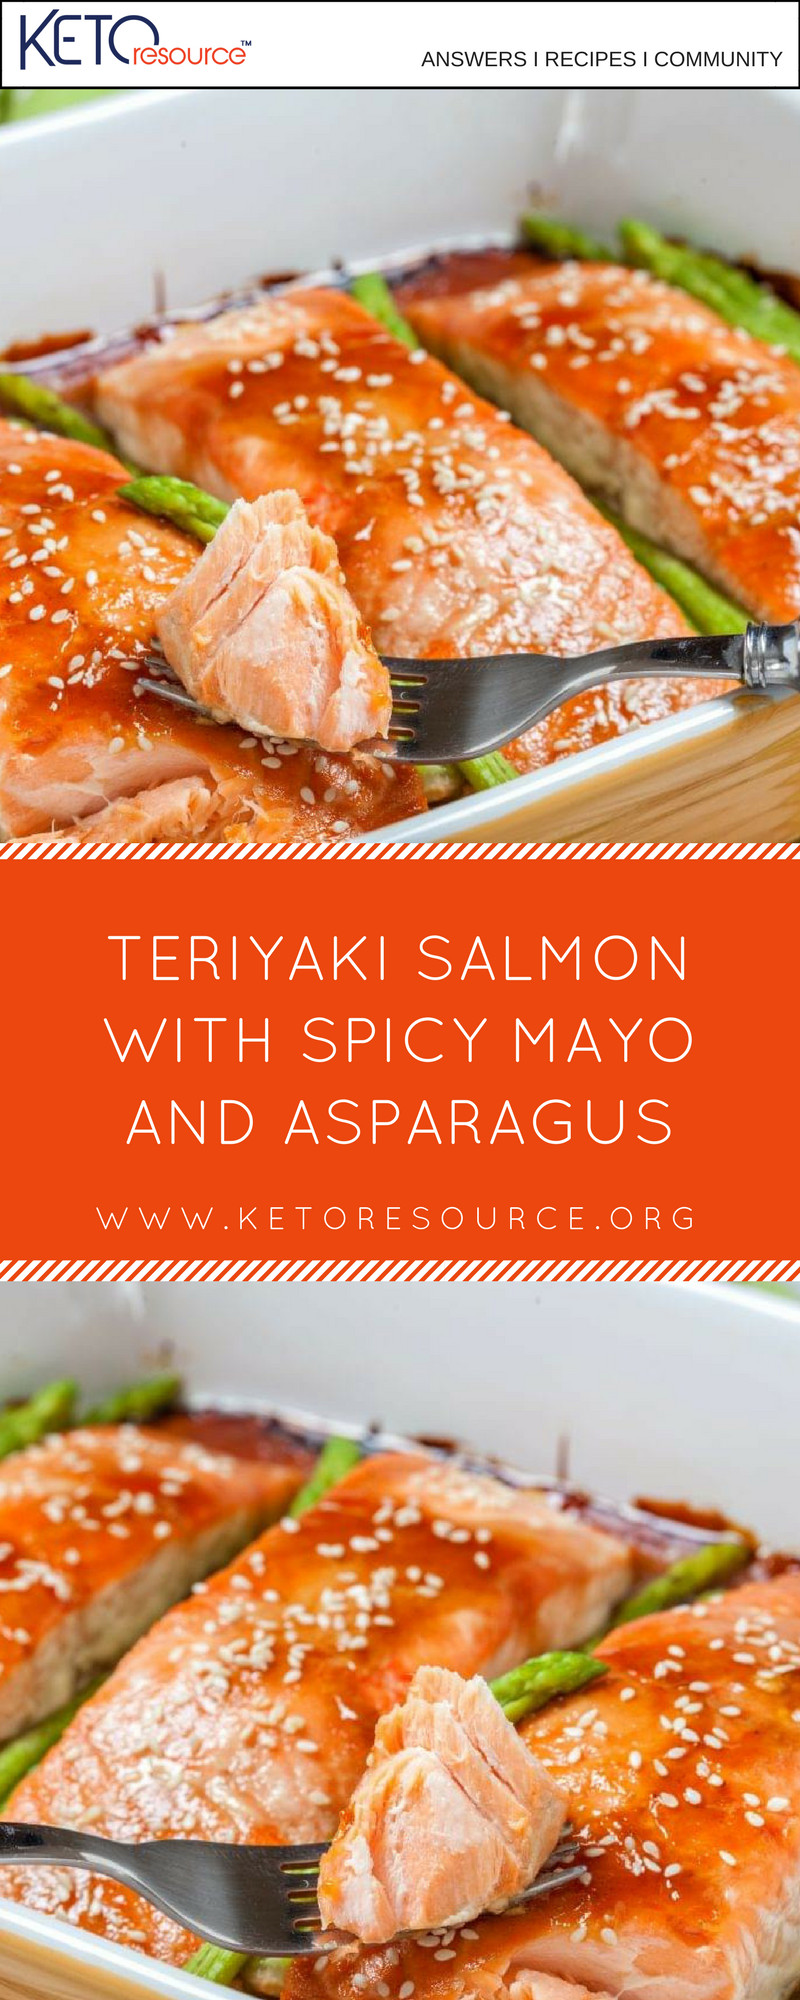 Teriyaki Salmon Keto
 Teriyaki Salmon with Spicy Mayo and Asparagus Ketogenic